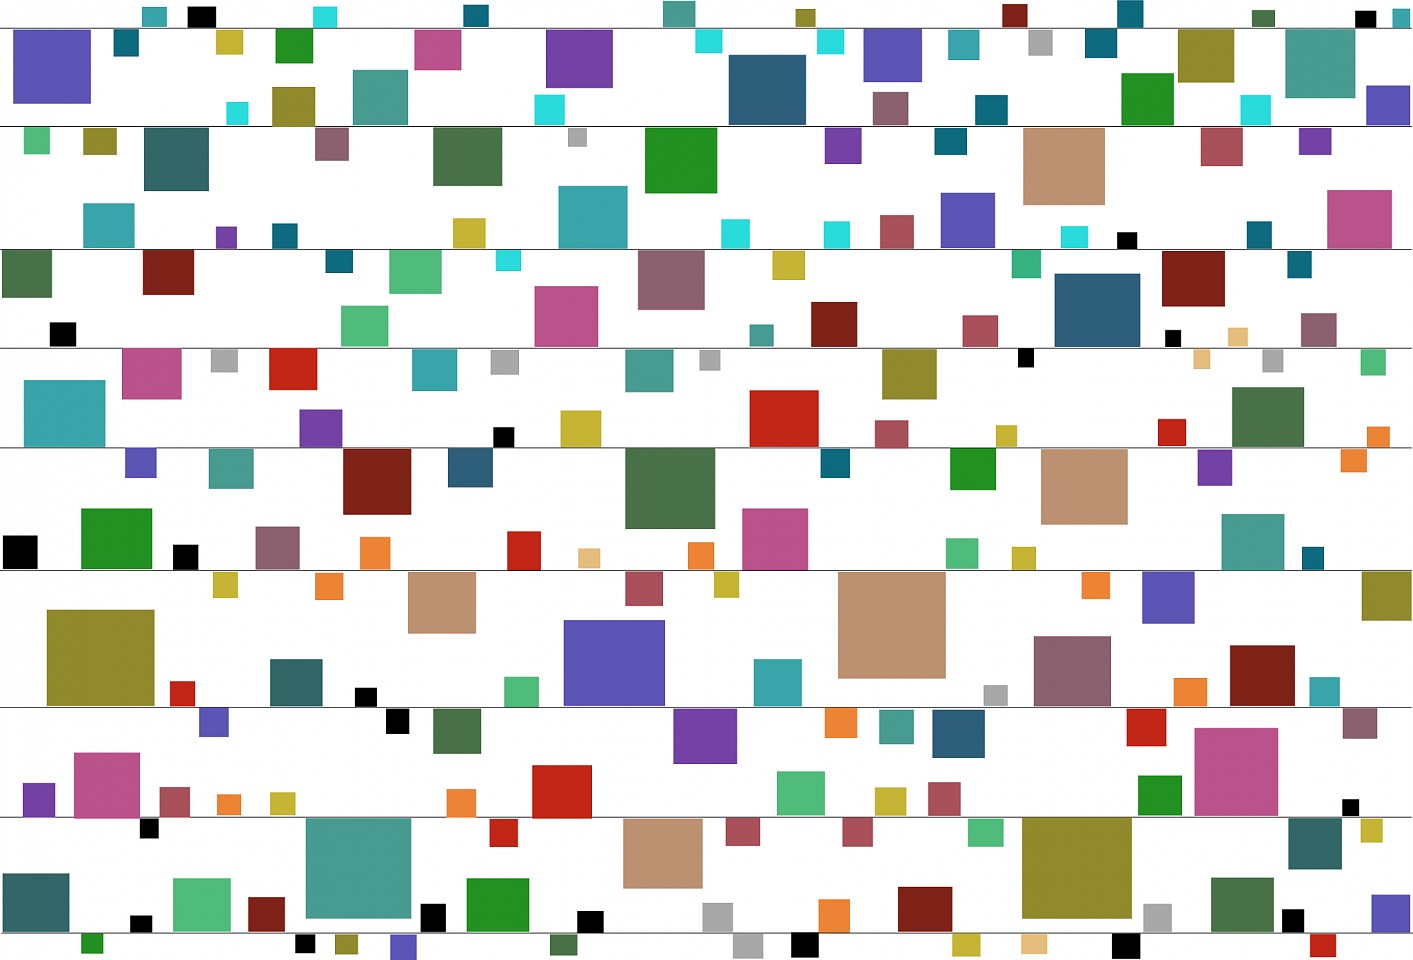 Dane Albert, Color Blocks #27, 2023
Acrylic on canvas (Concept), 48 x 60 in. (121.9 x 152.4 cm)
Series of colored blocks in multiple configurations
DA.cb-2023-027